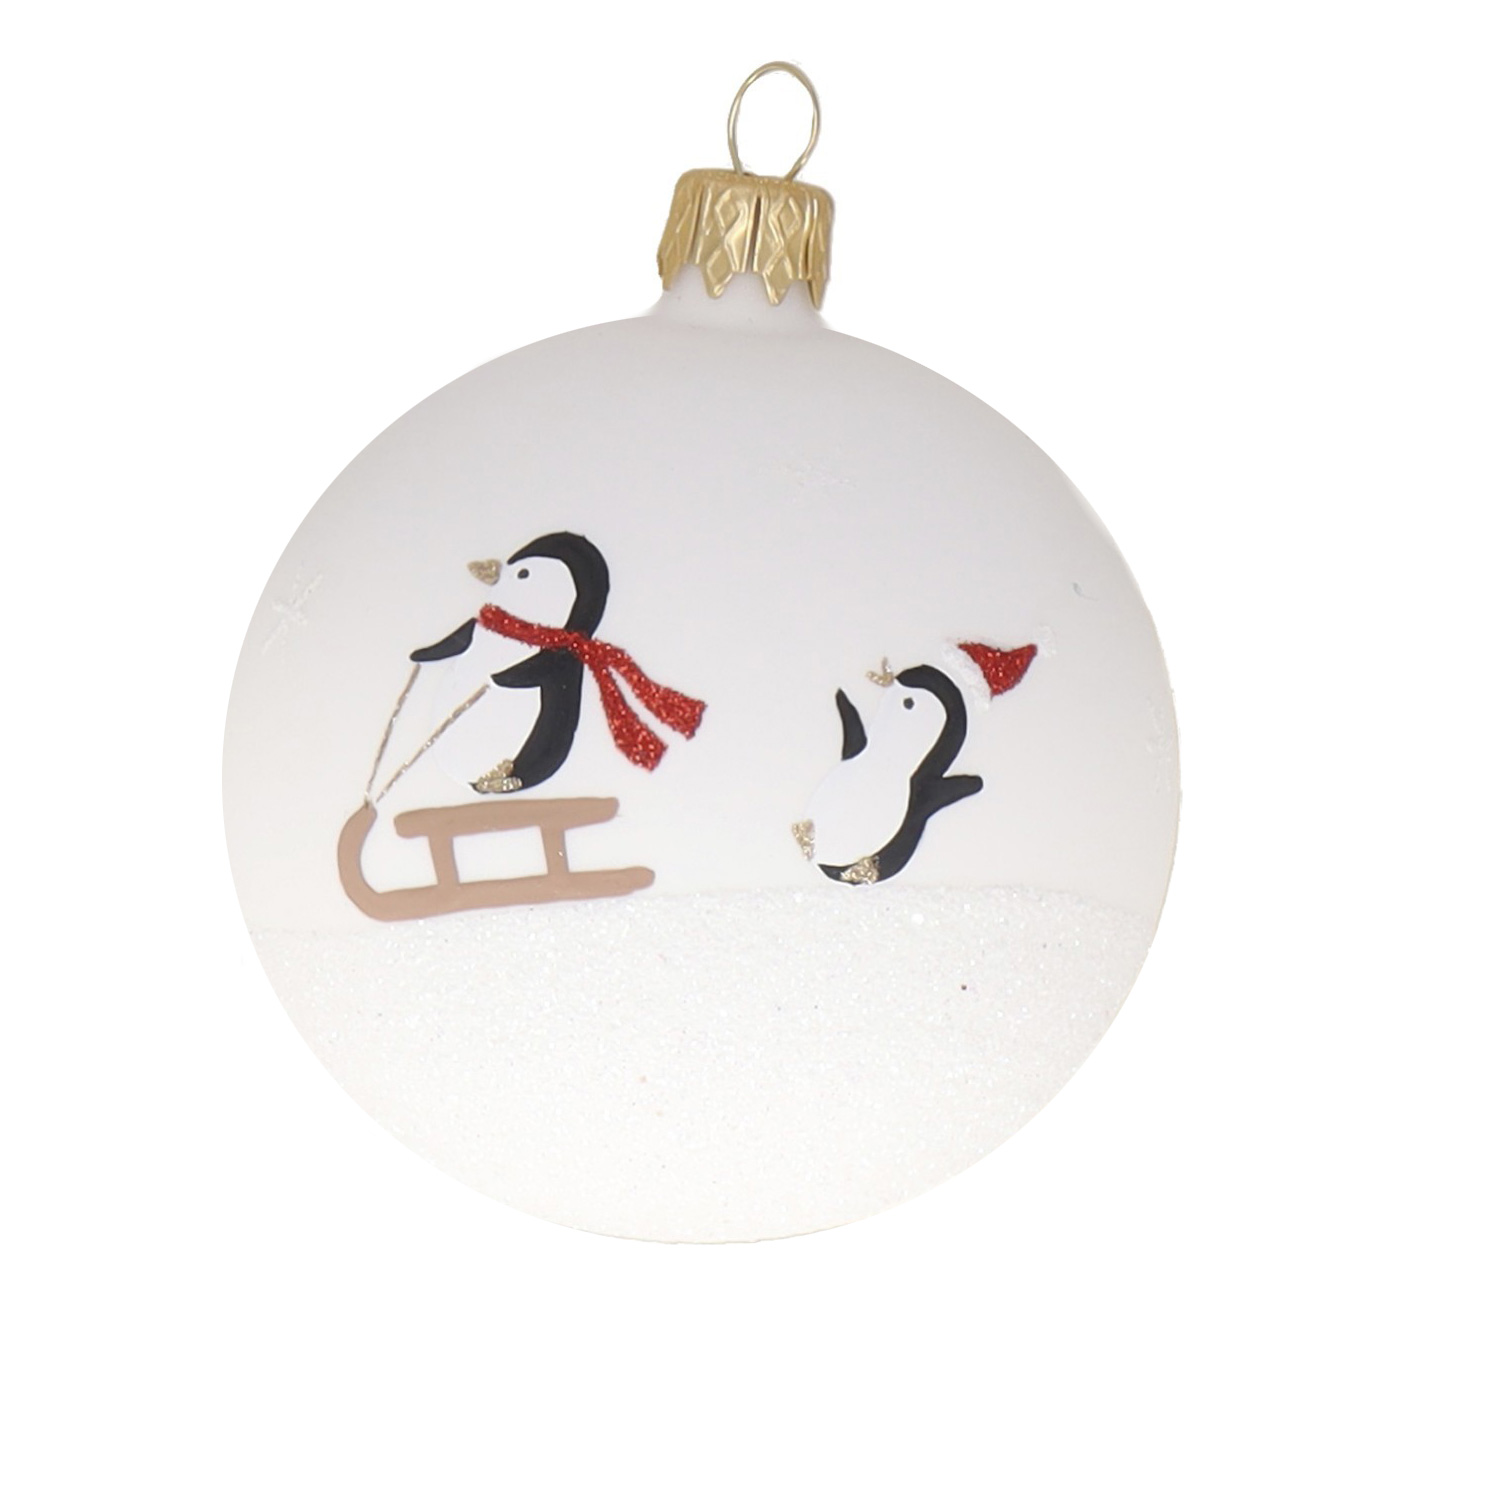 Weihnachtskugel "Pinguine" schwarz-braun-weiß, D. ca. 8 cm, handbemalt, weiß matt 